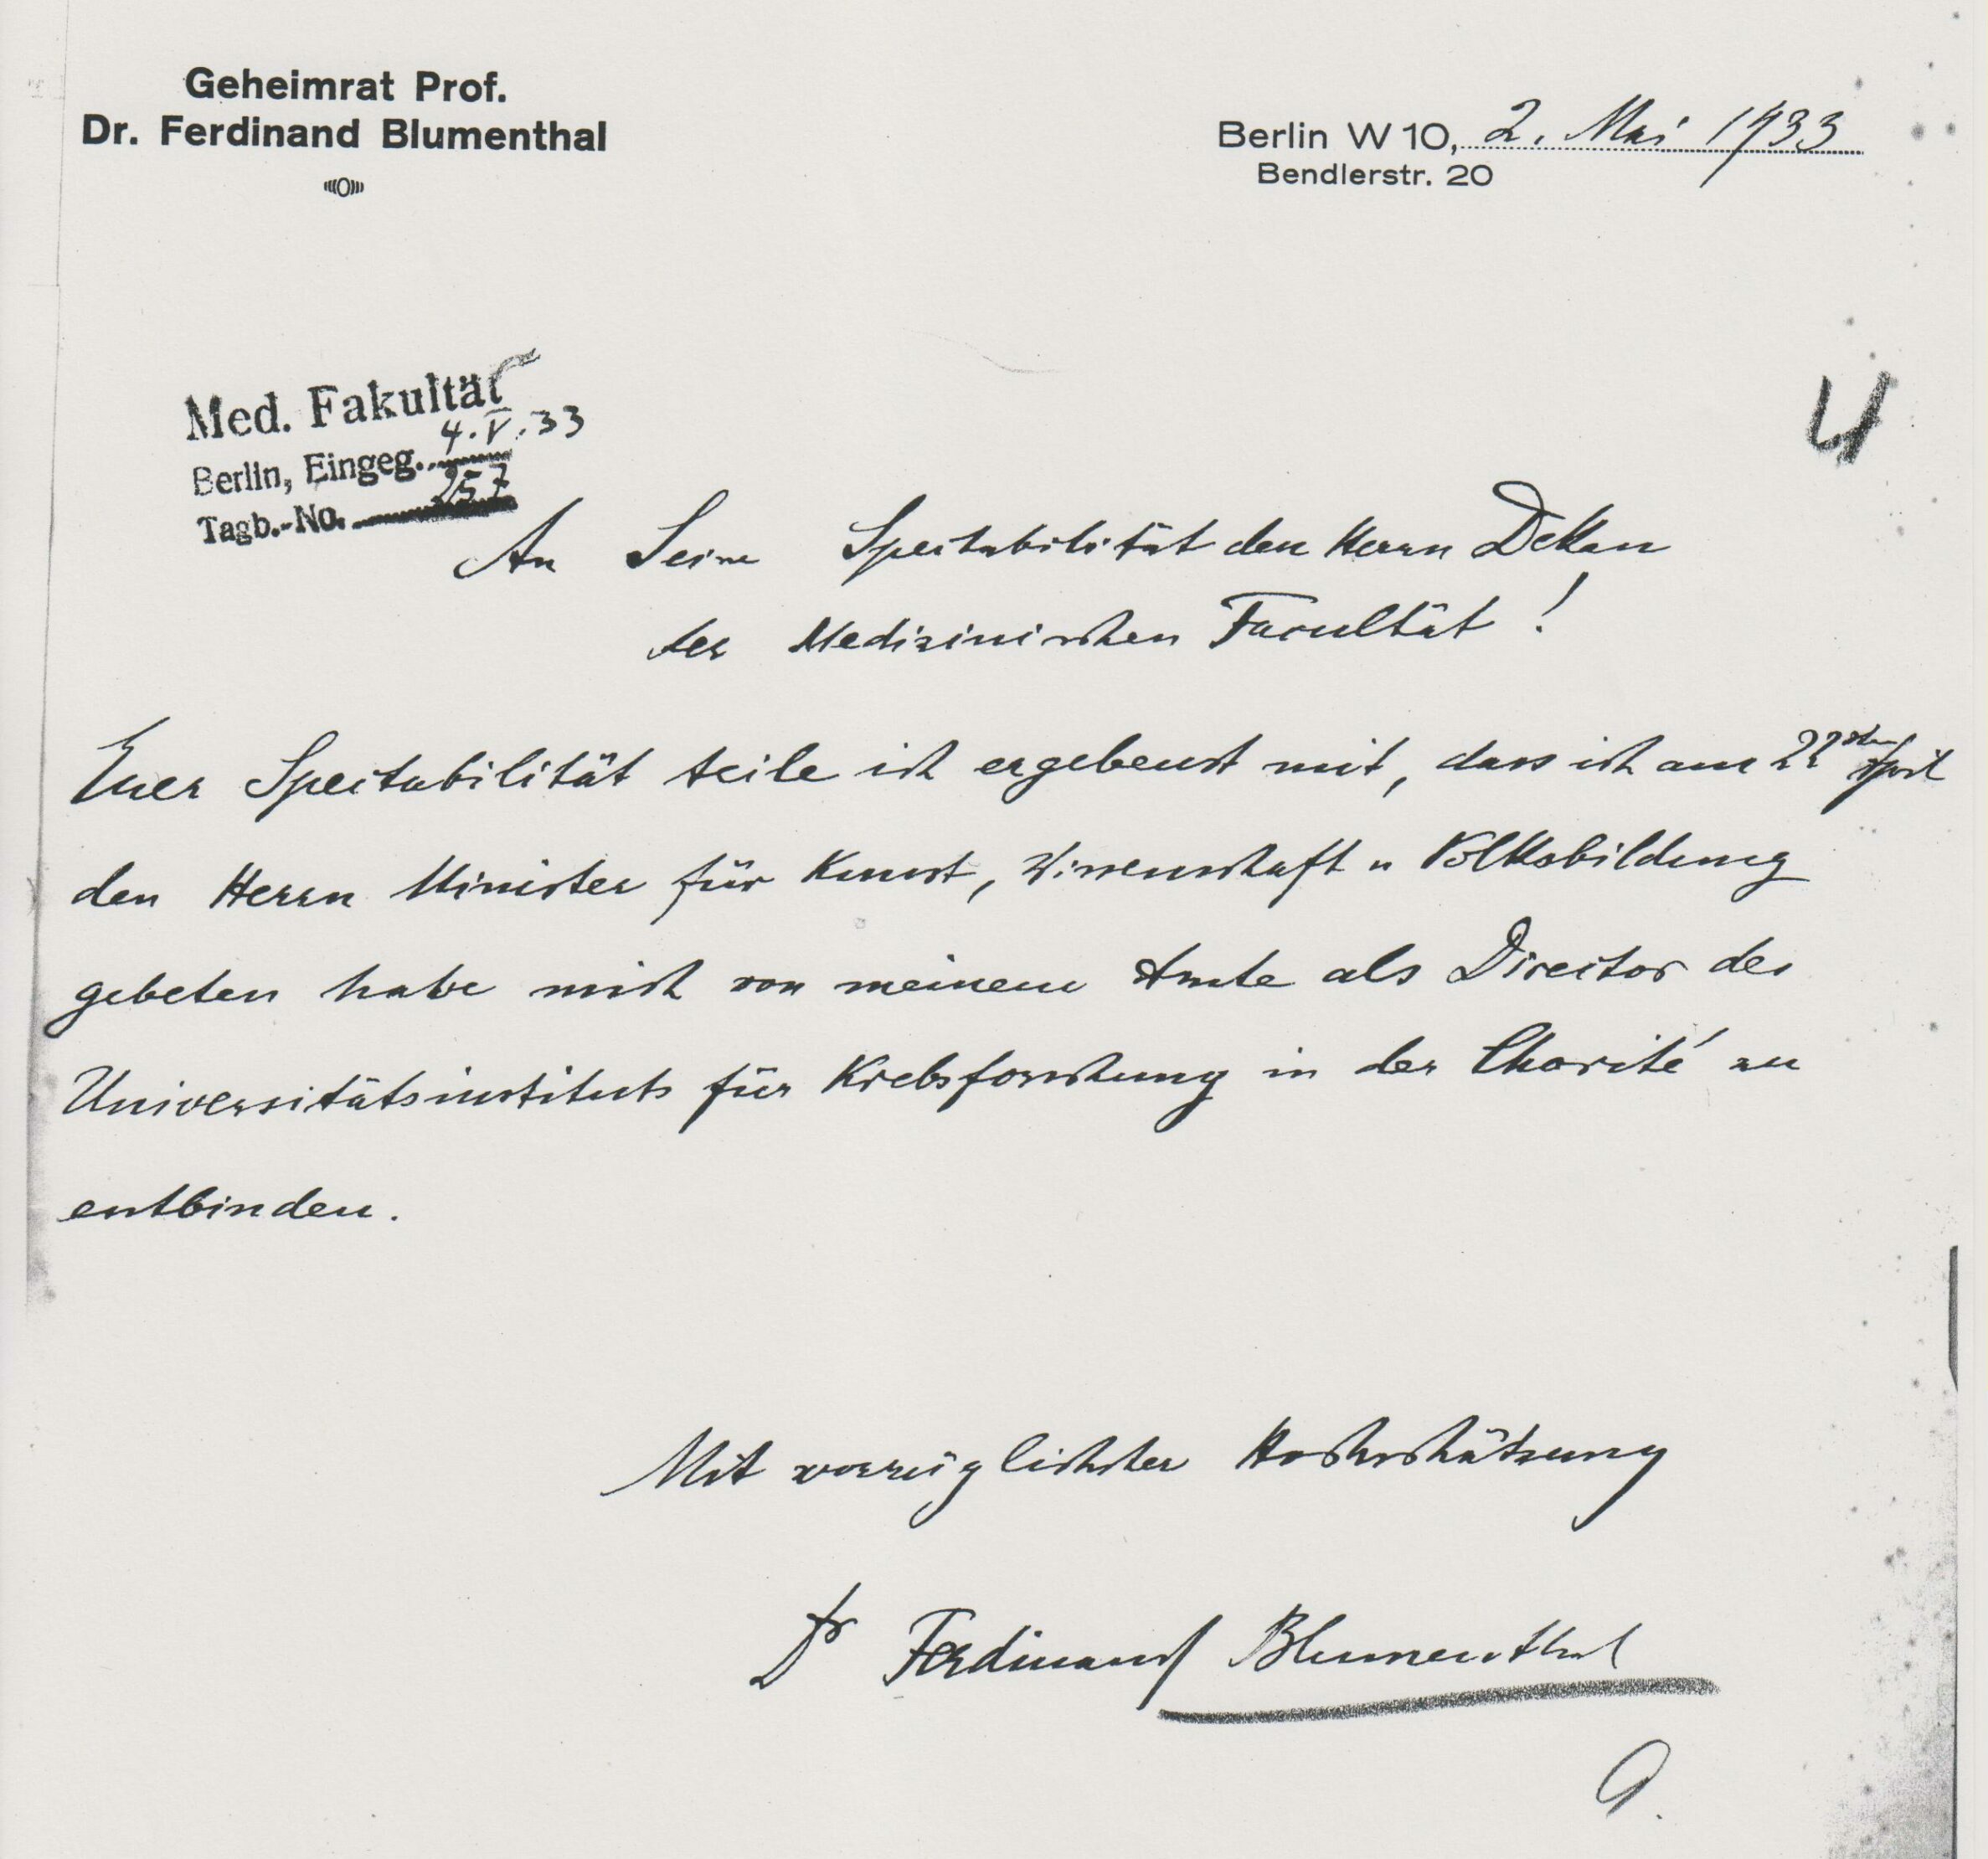 Rücktrittsschreiben an den Dekan der Medizinischen Fakultät, Mai 1933, Archiv Humboldt-Universität Berlin, Personalakte Blumenthal